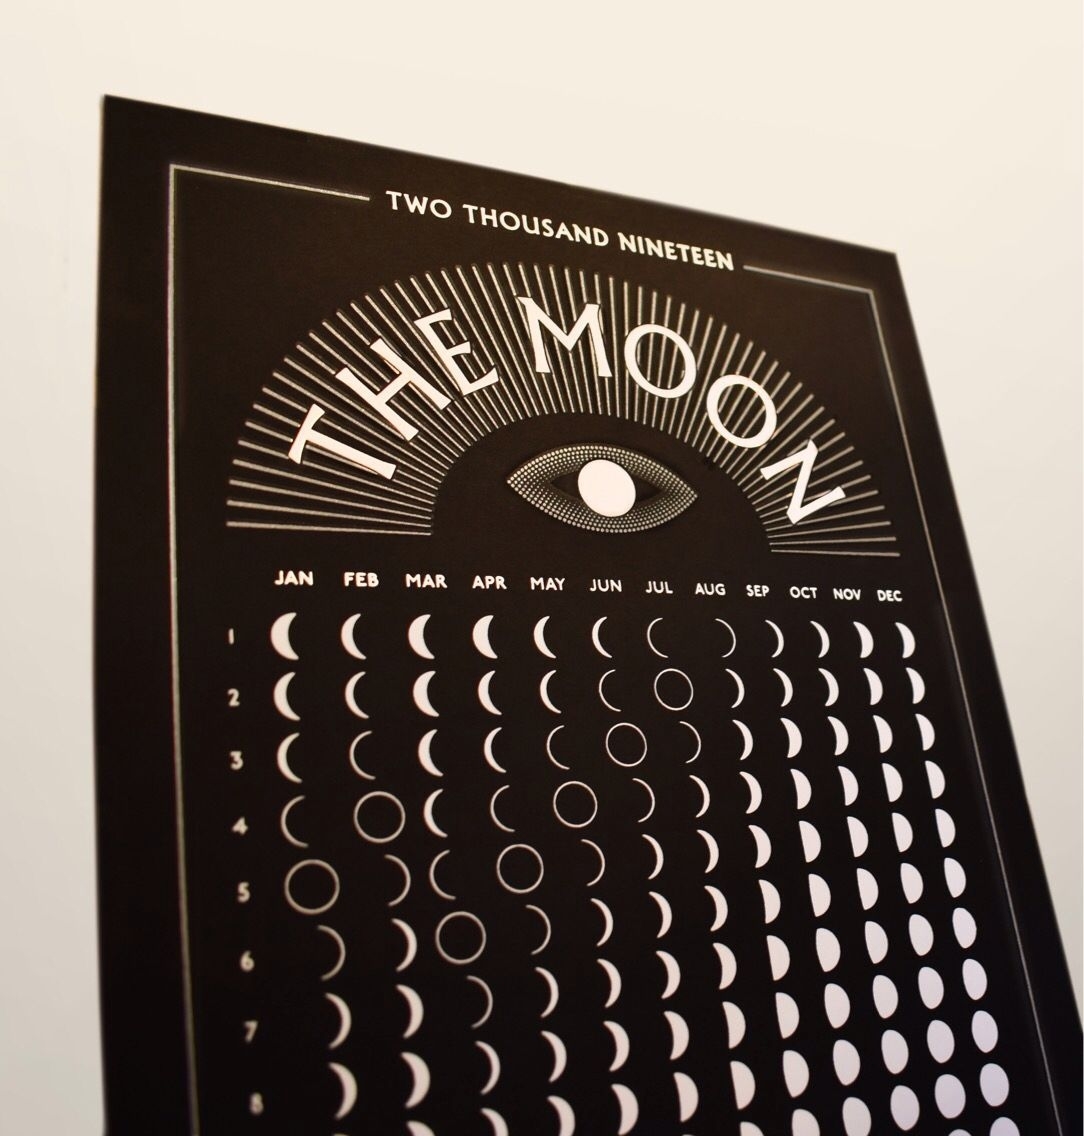 The Moon 2020 Moon Calendar | Etsy | Moon Calendar, Full Moon Phases, Moon Phase Calendar July 2021 Full Moon Calendar